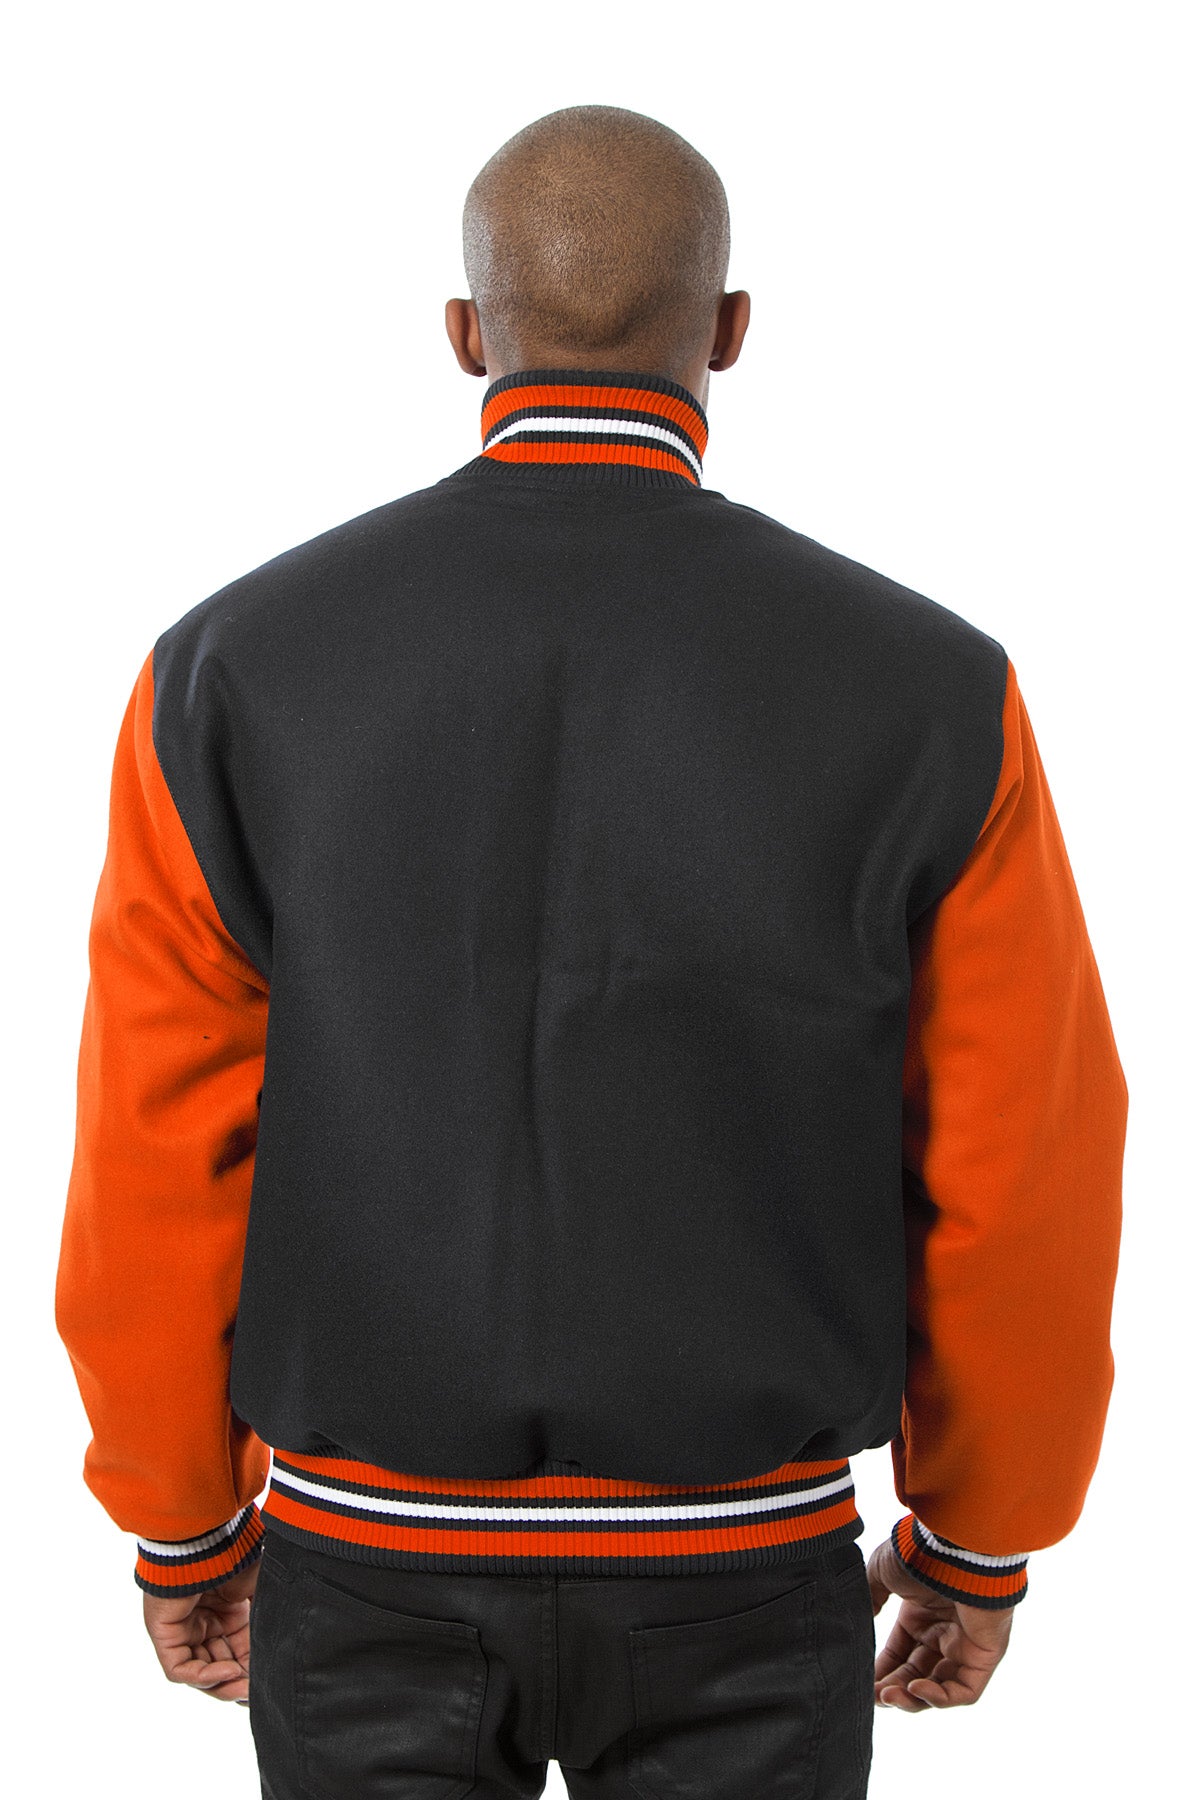 All-Wool Varsity Jacket in Black and Orange